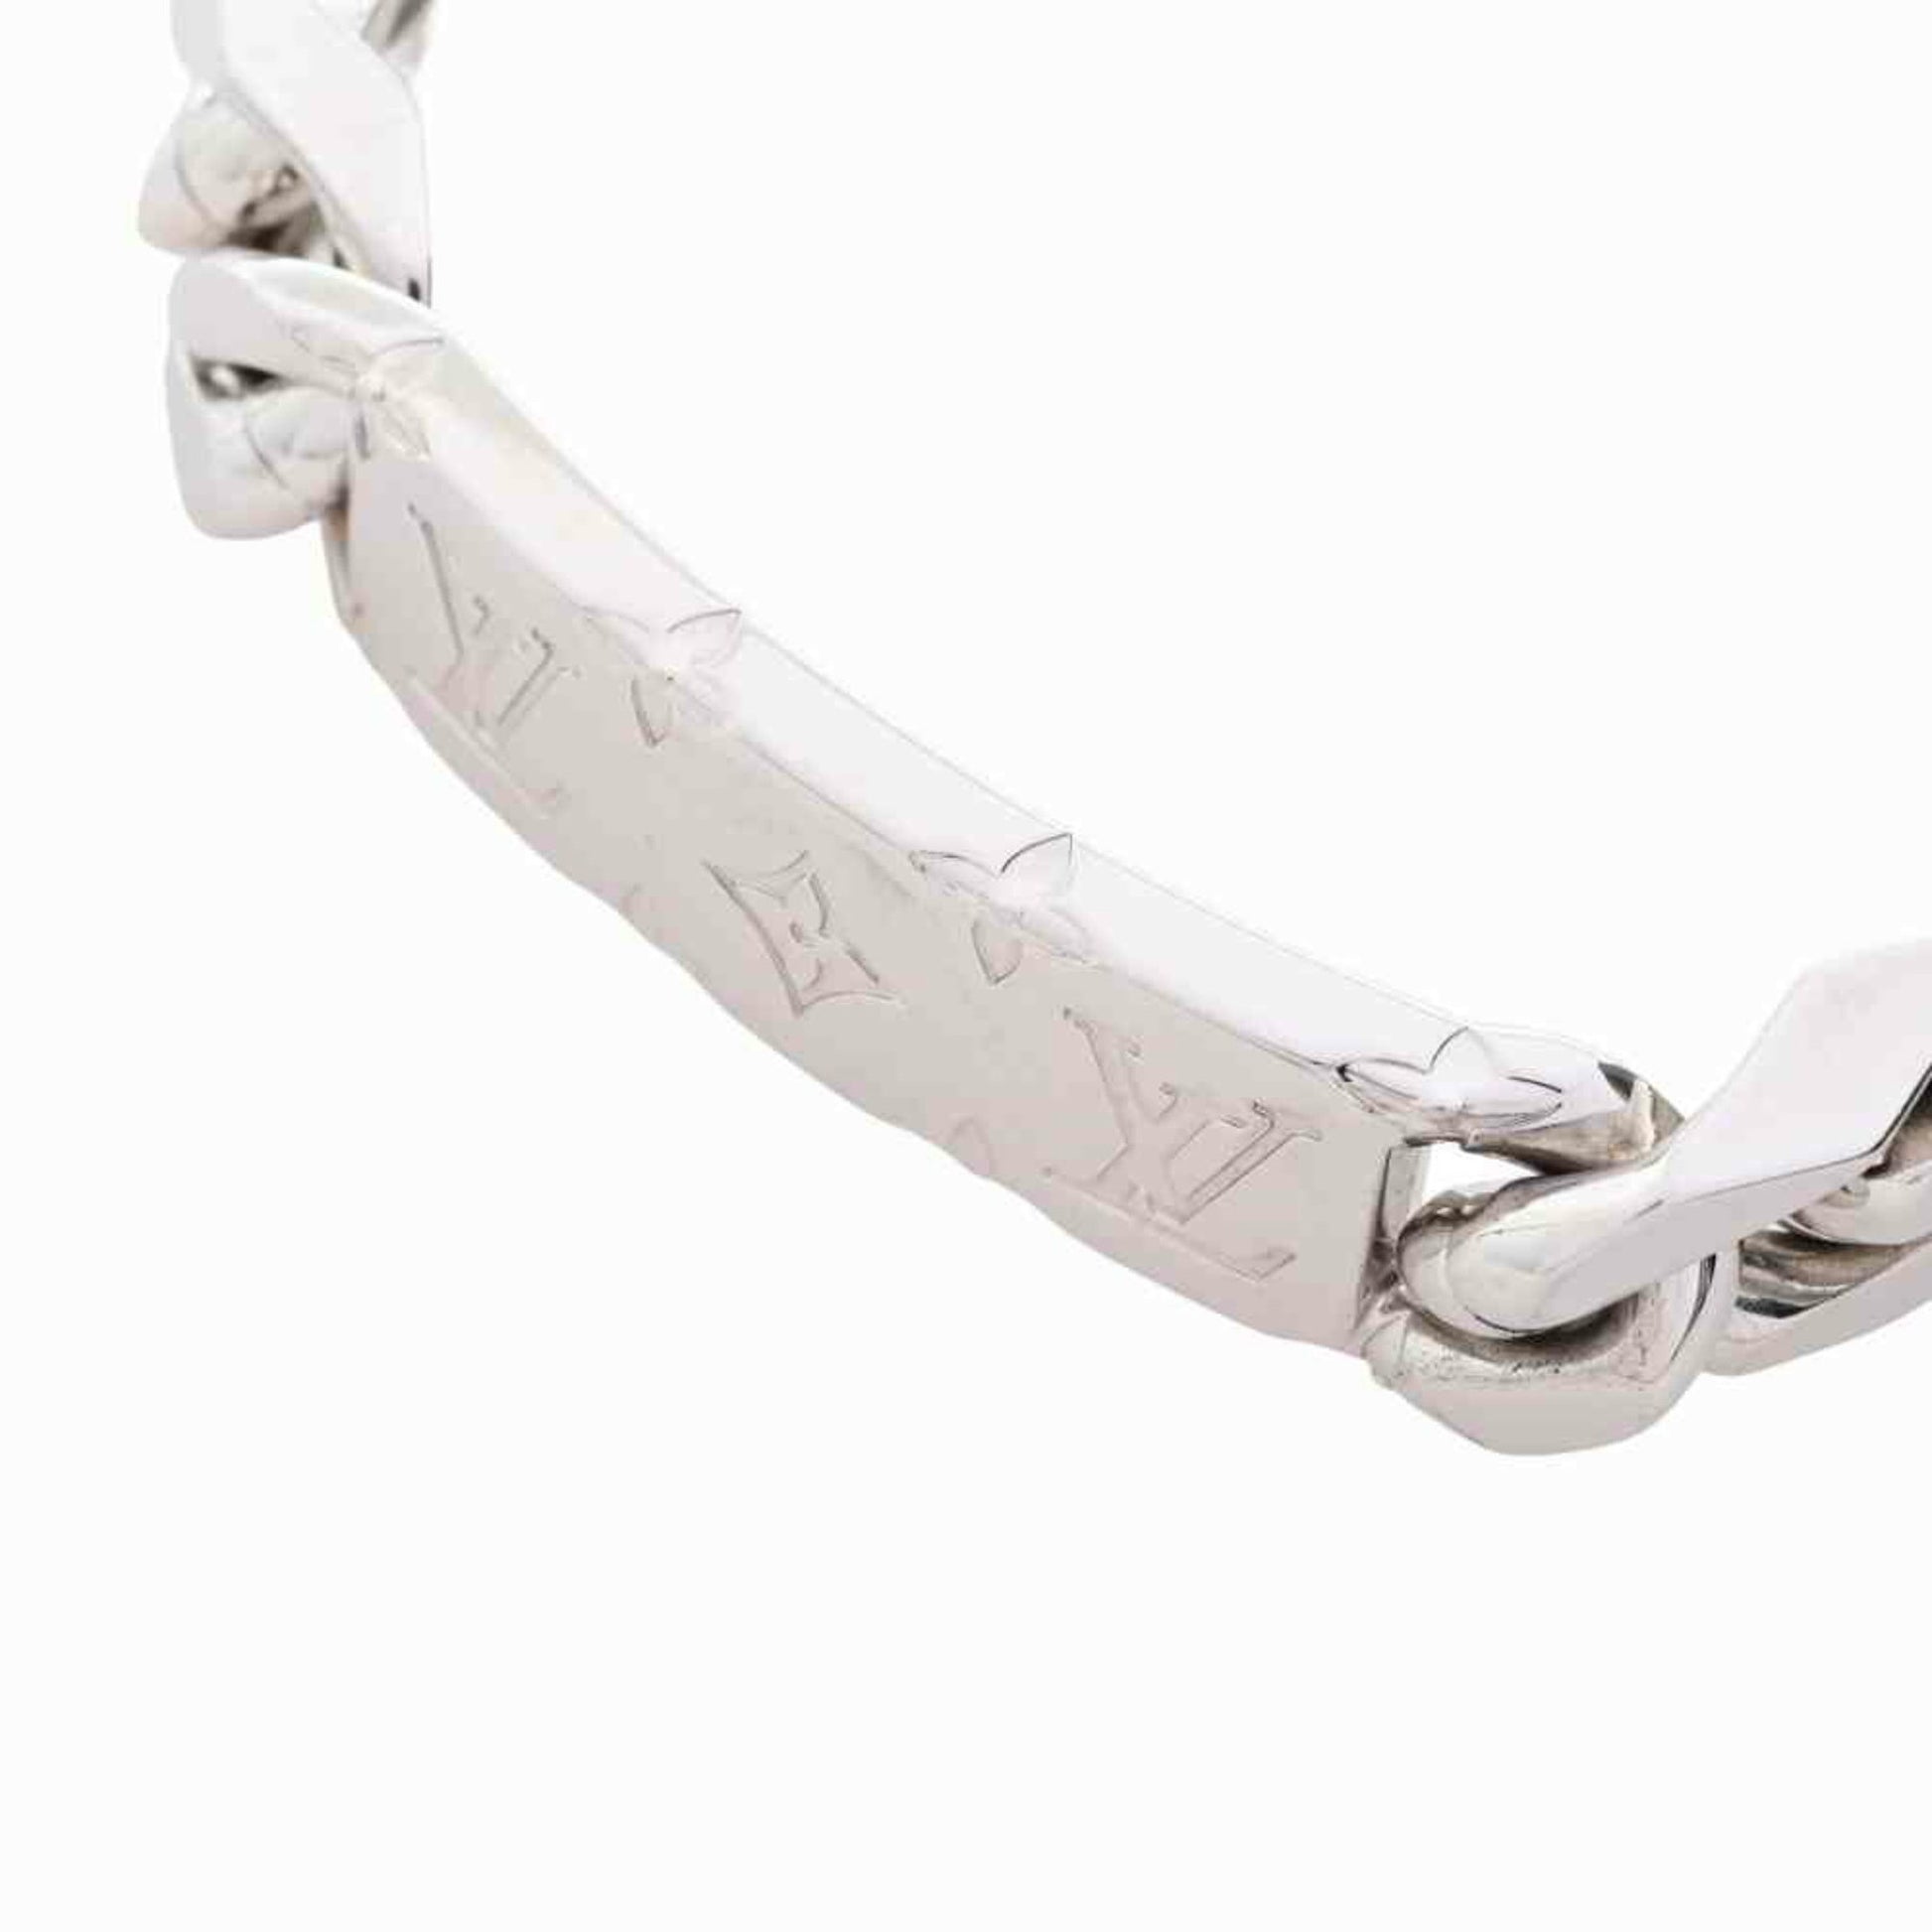 Louis Vuitton Monogram Chain Bracelet M00269 Silver Metal Women